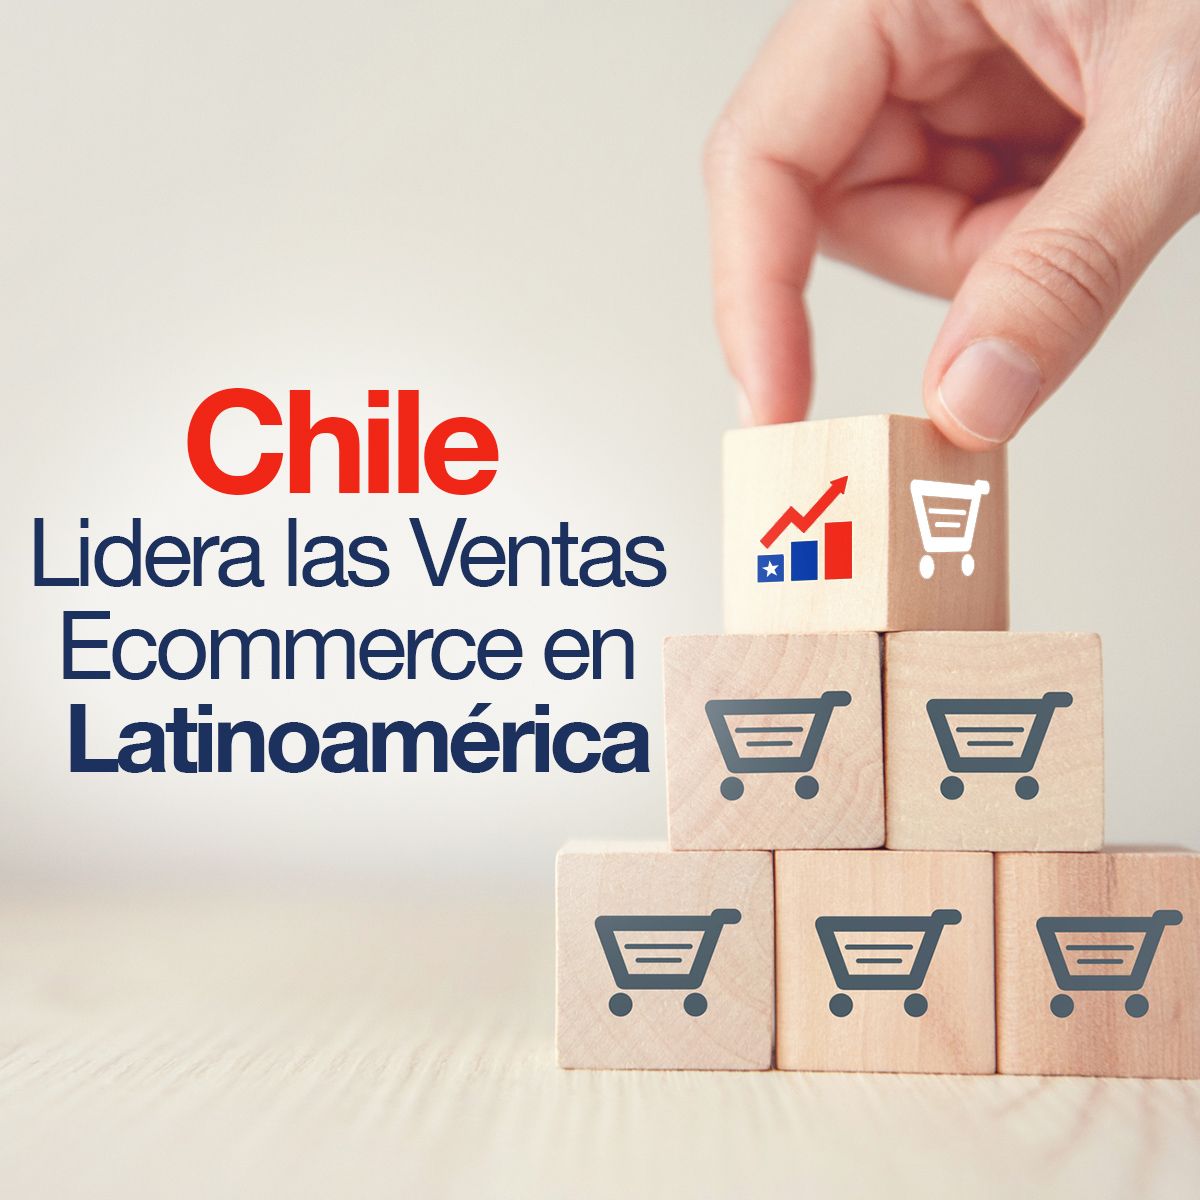 Chile Lidera las Ventas Ecommerce en Latinoamérica